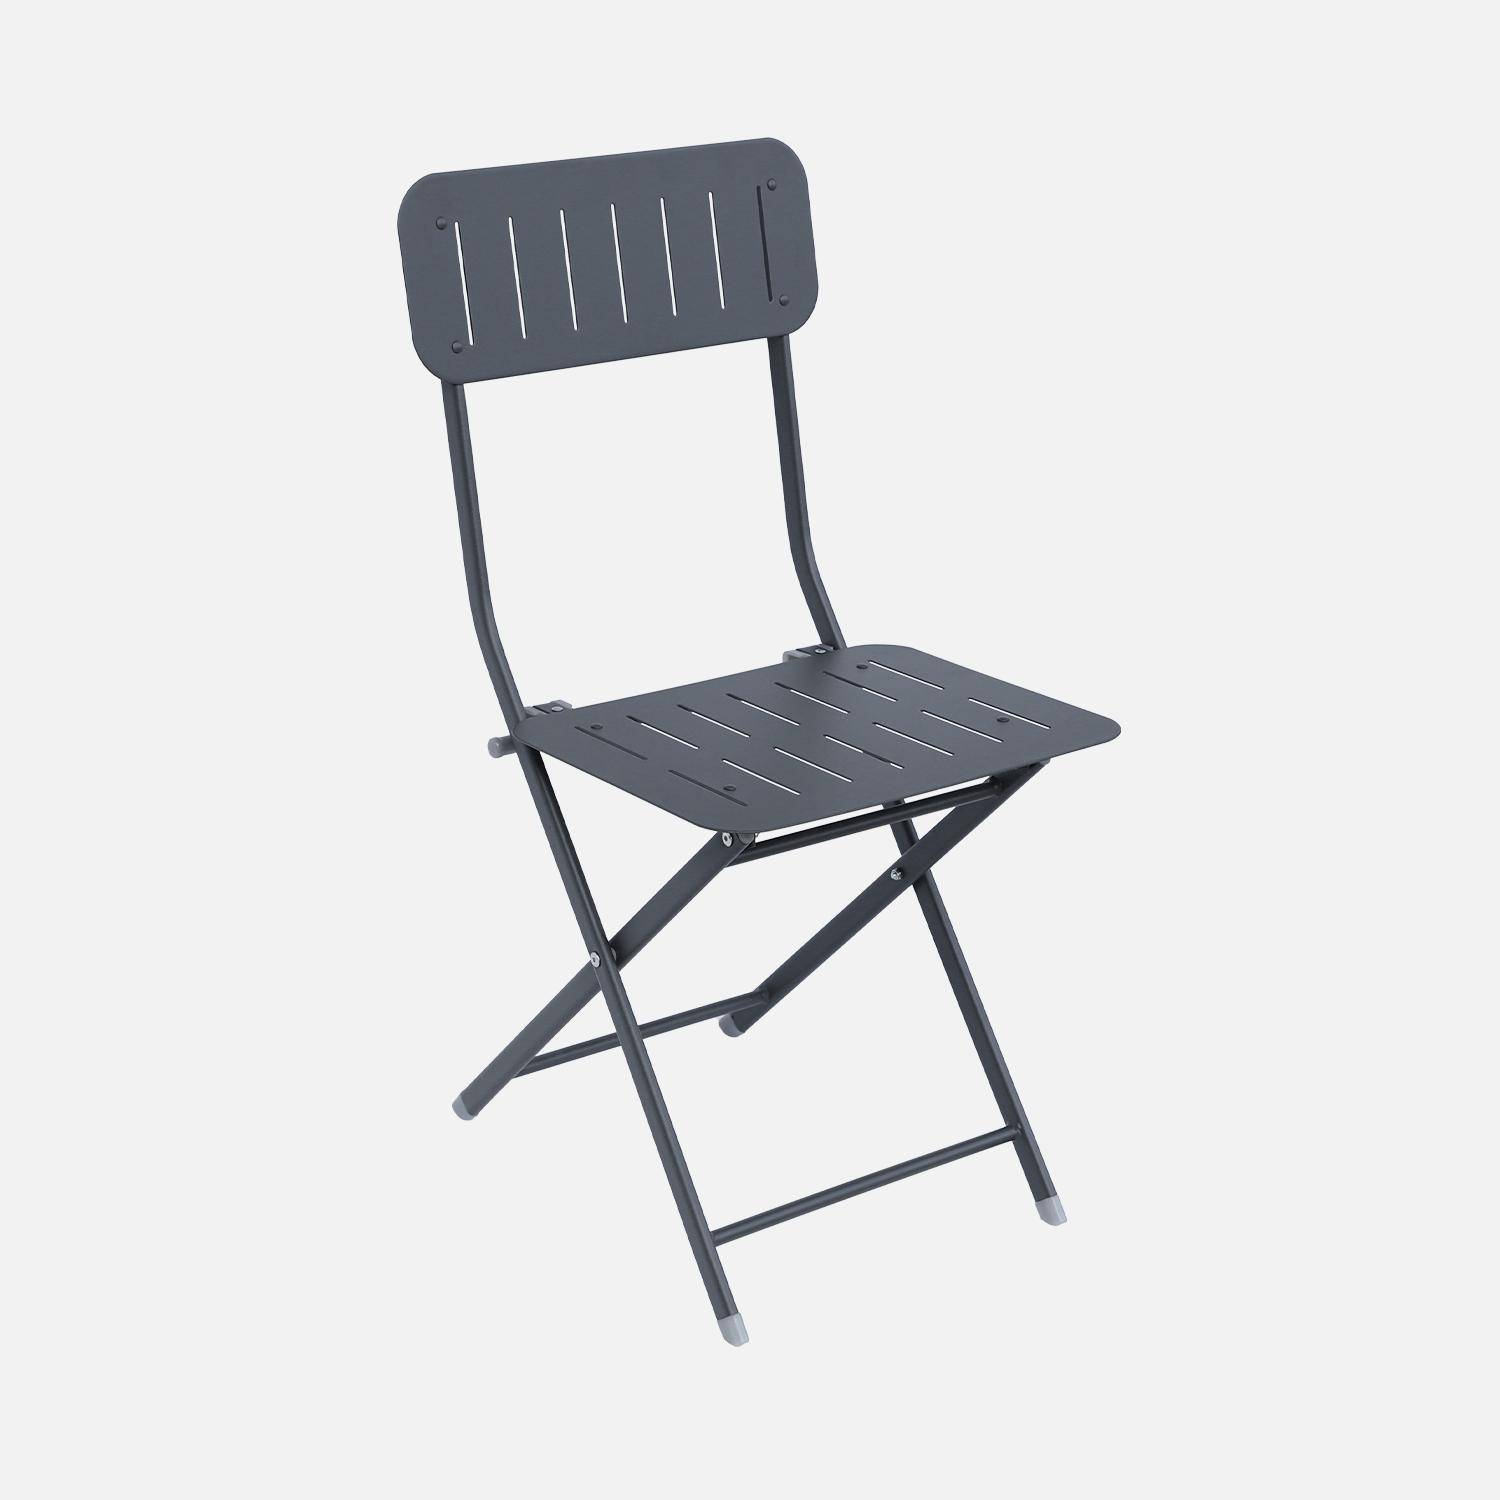 Klappbarer Gartentisch vom Typ Bistro anthrazit mit 2 klappbaren Stühlen aus robustem verzinktem Stahl - Marina Photo5